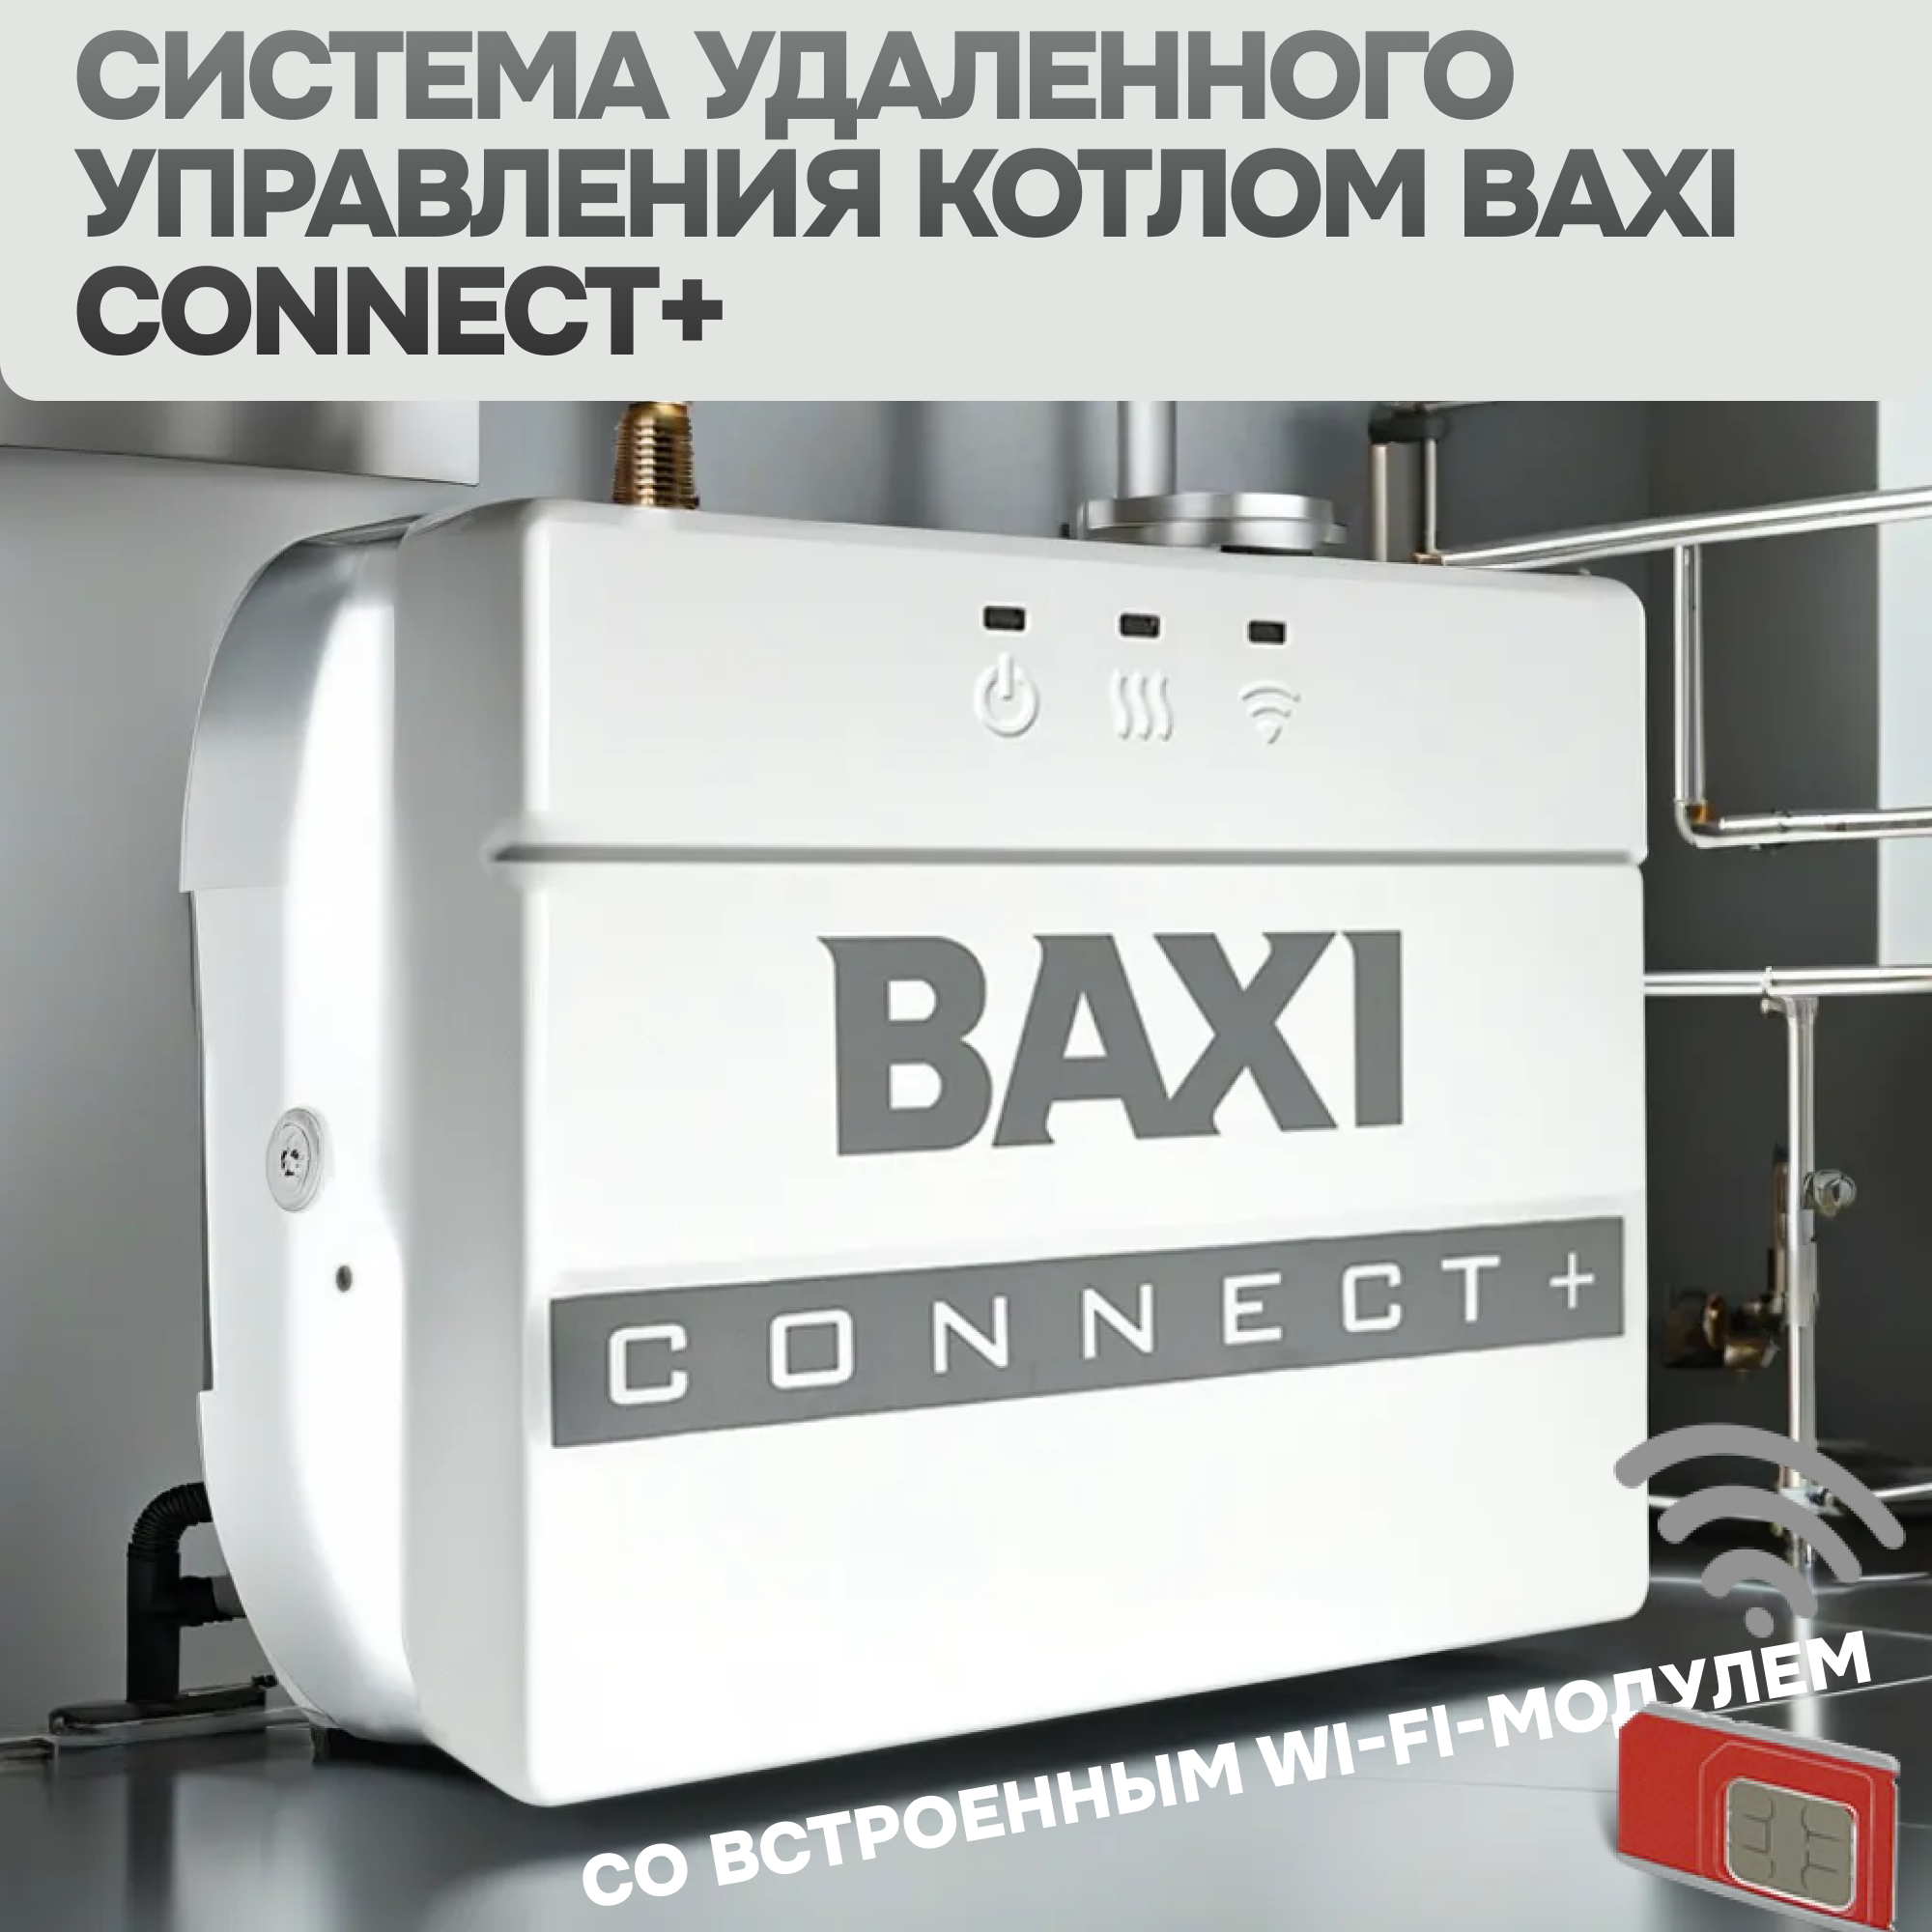 Система удаленного управления котлом BAXI со встроенным Wi-Fi-модулем